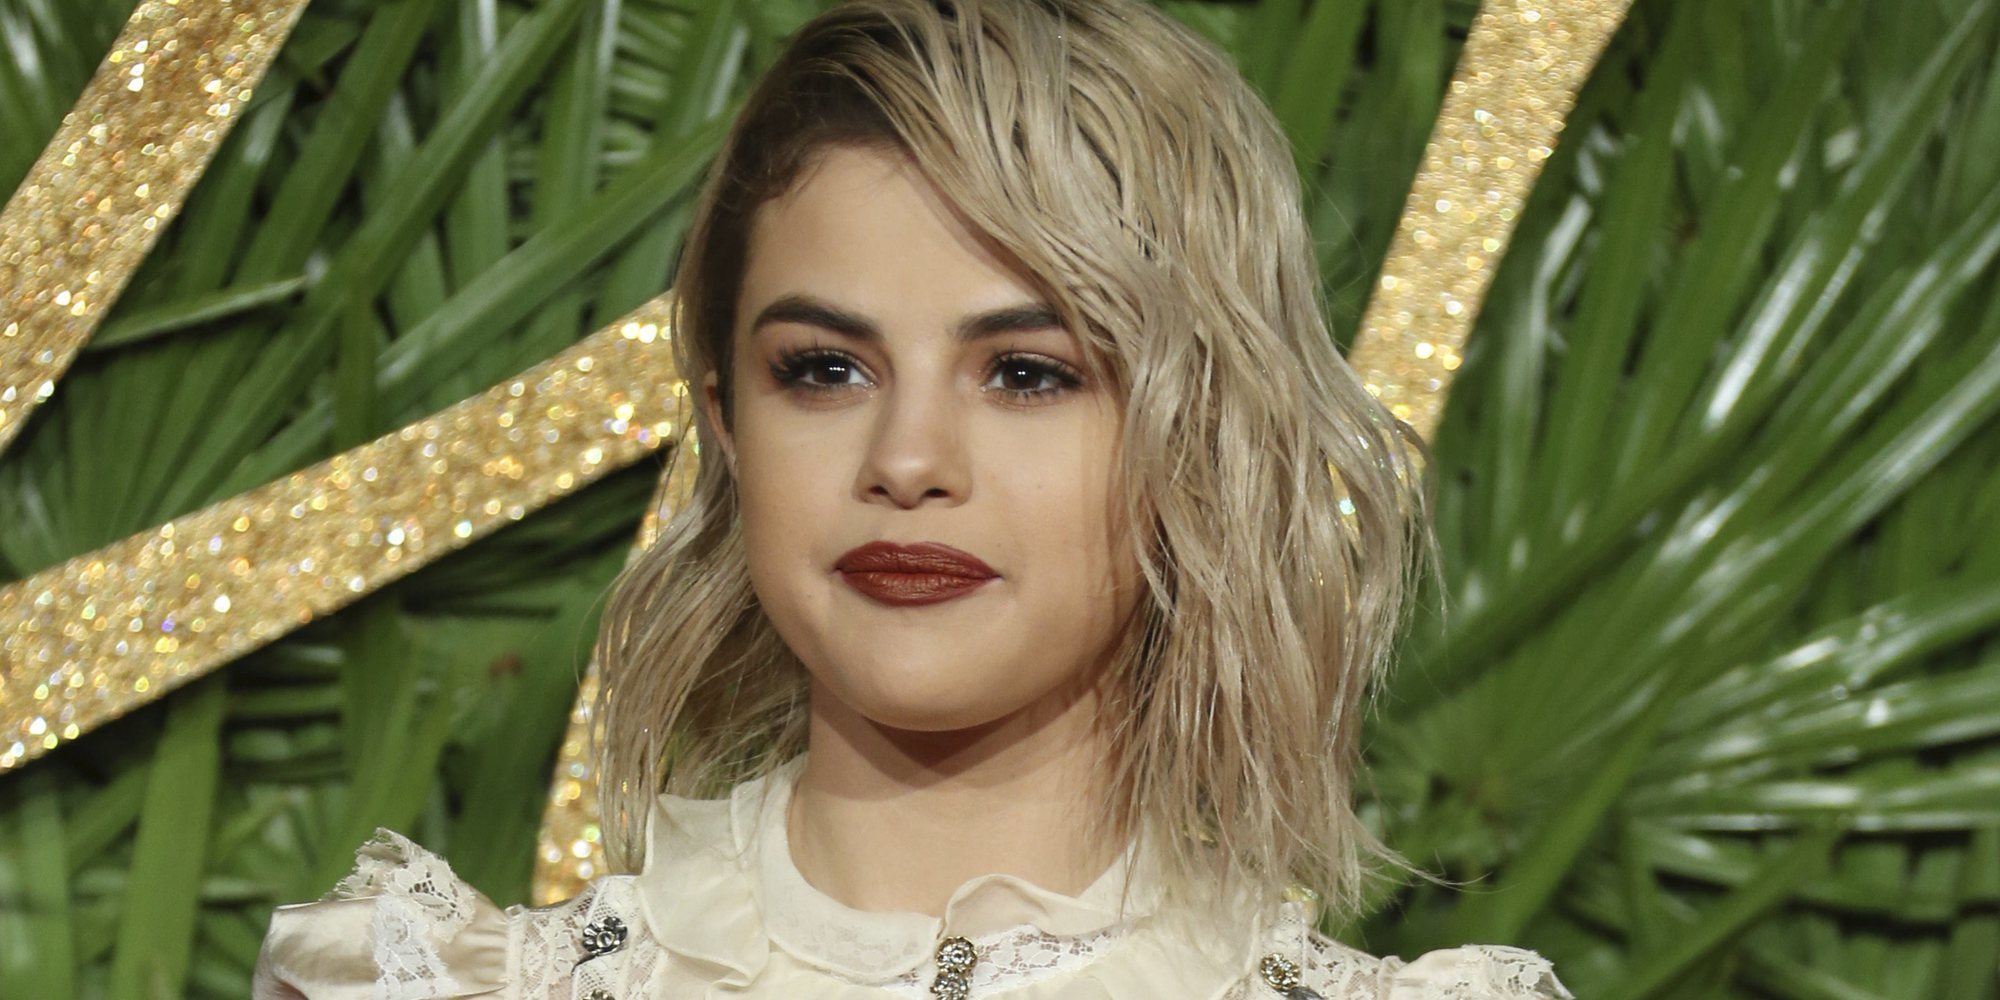 Selena Gomez abandona de nuevo las redes sociales por culpa de los haters: "Voy a tomarme un respiro"